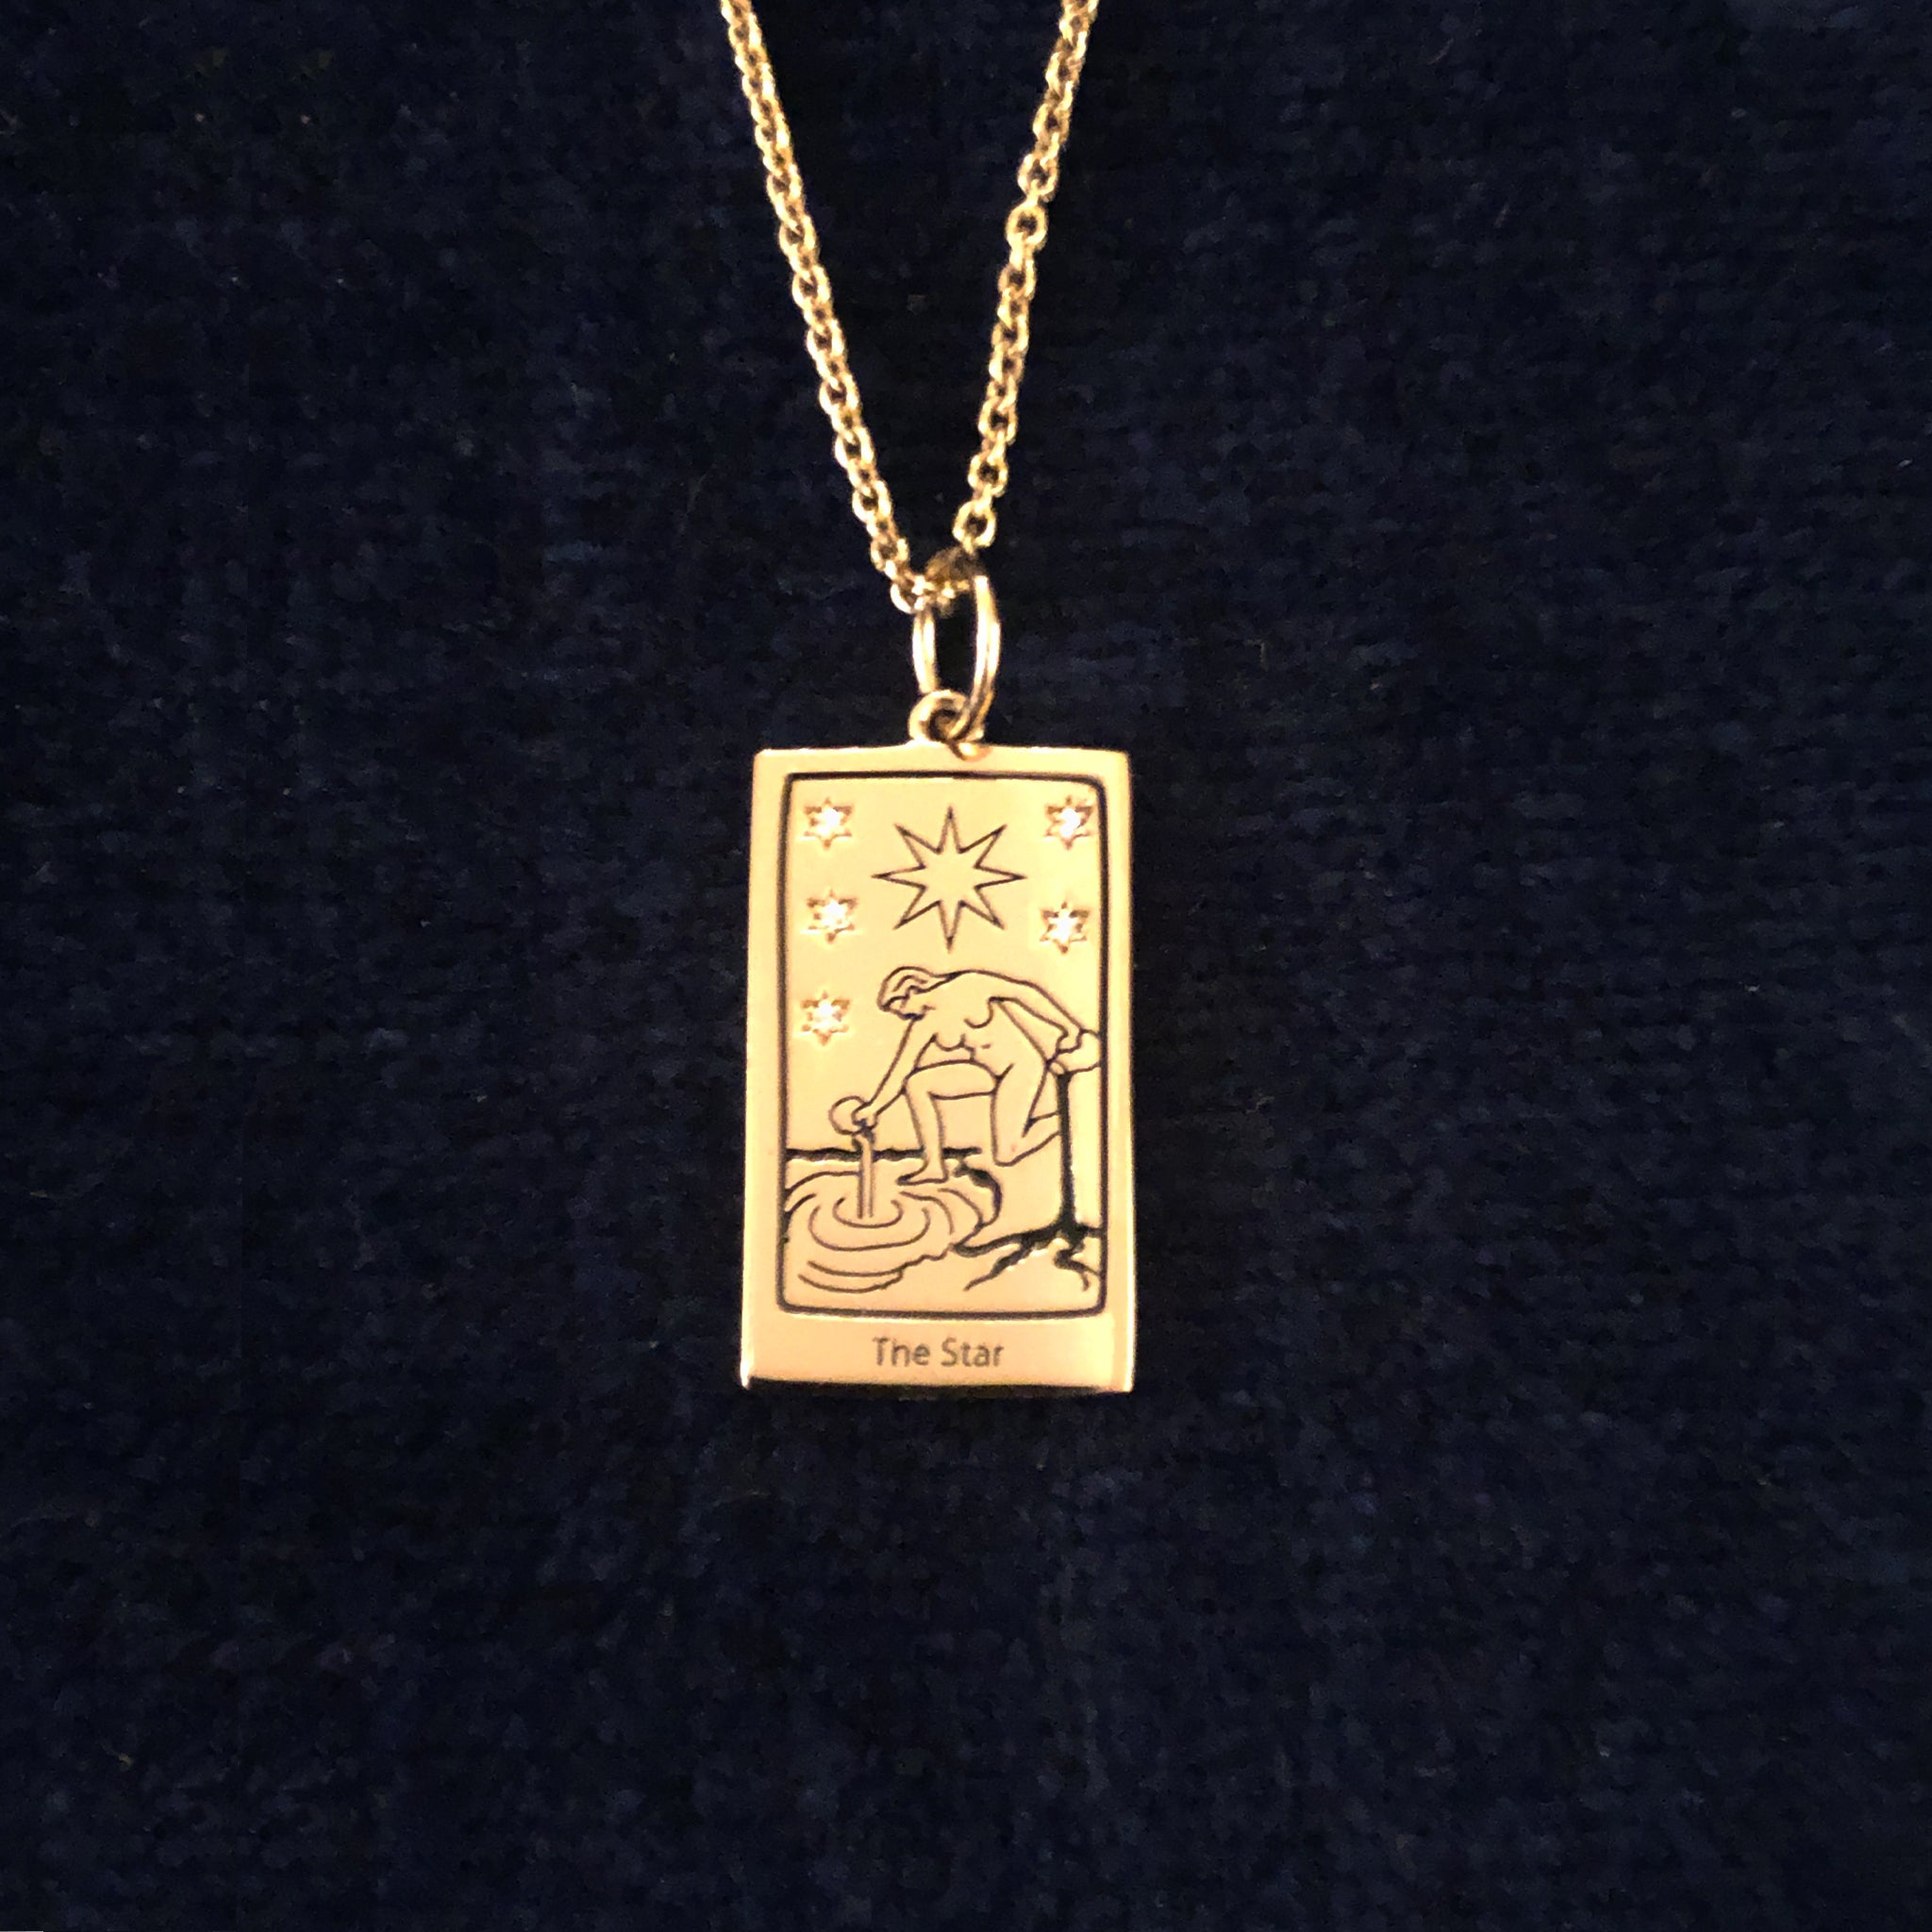 18Kt Gold Tarot Necklaces | Indie jewelry, Jewelry lookbook, Dream jewelry